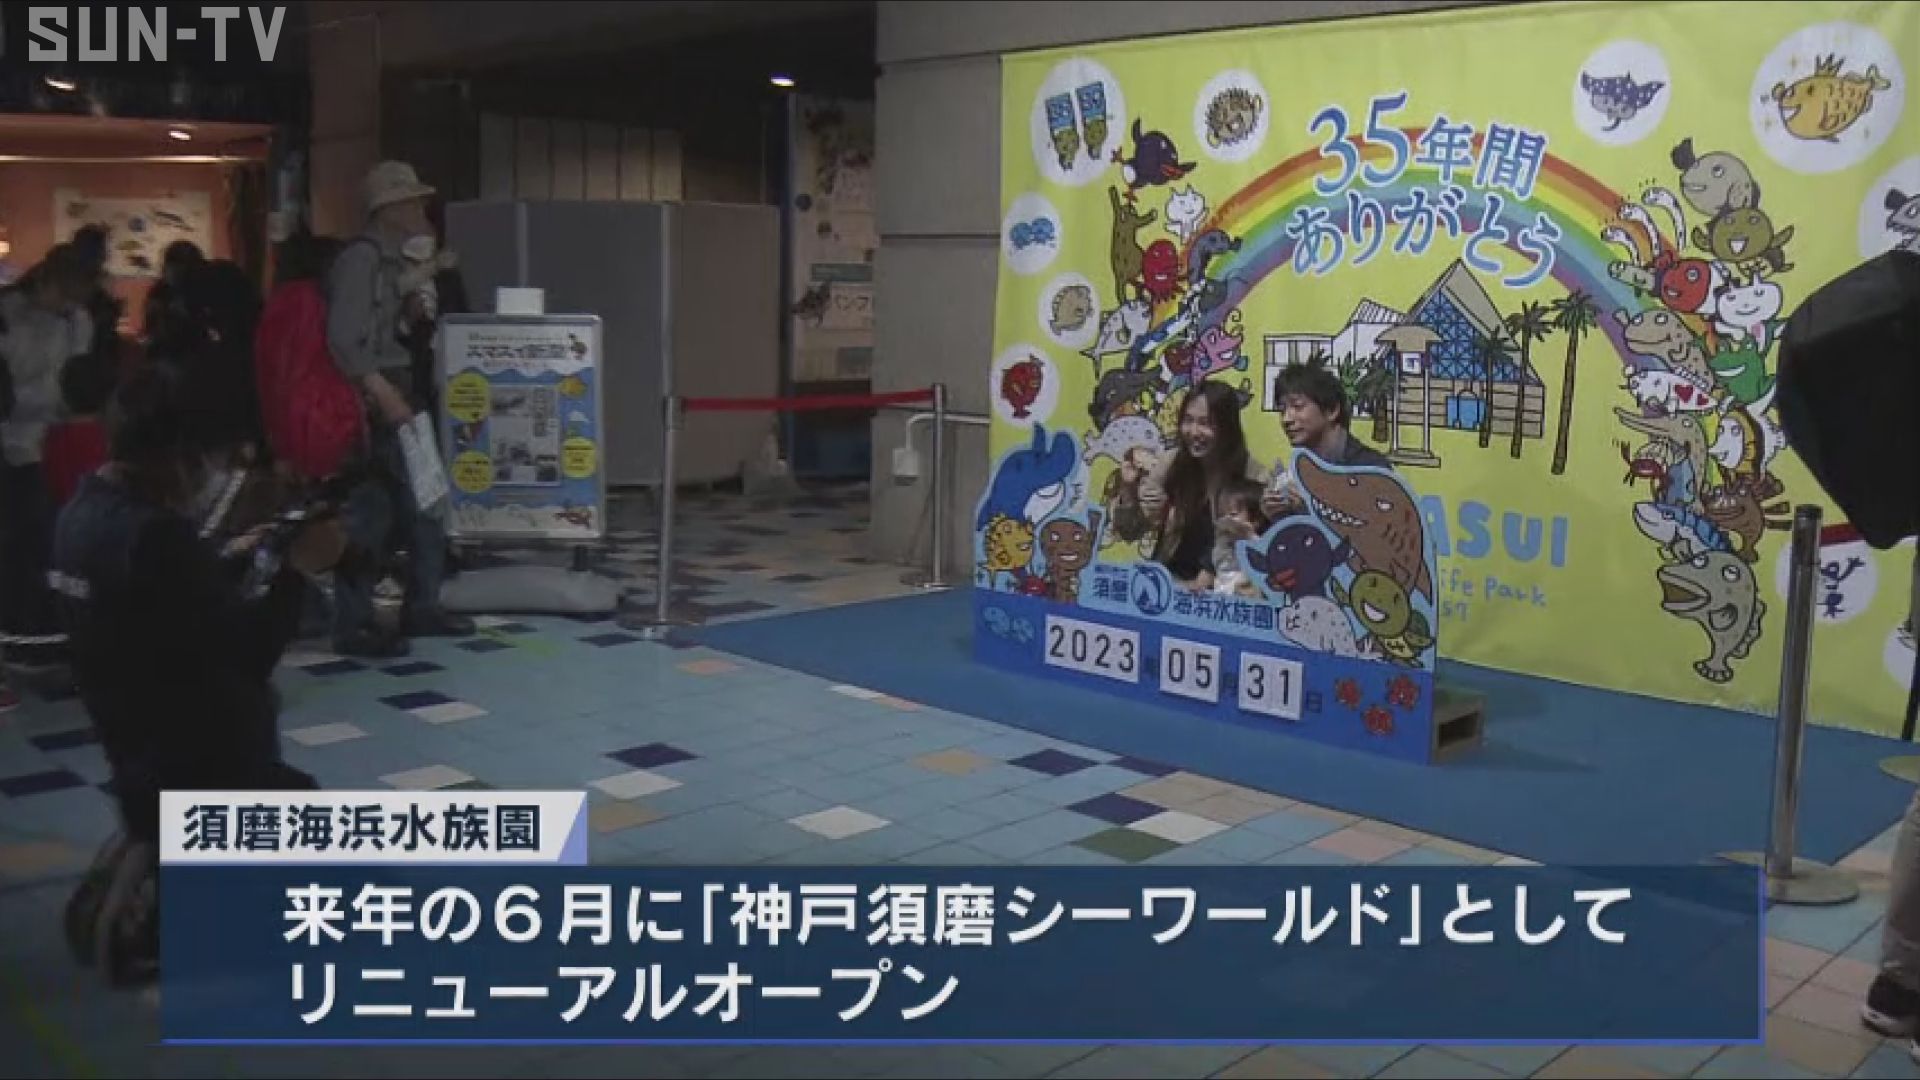 須磨海浜水族園が35年の歴史に幕 「笑顔と感謝のスマスイラストデー」 サンテレビニュース